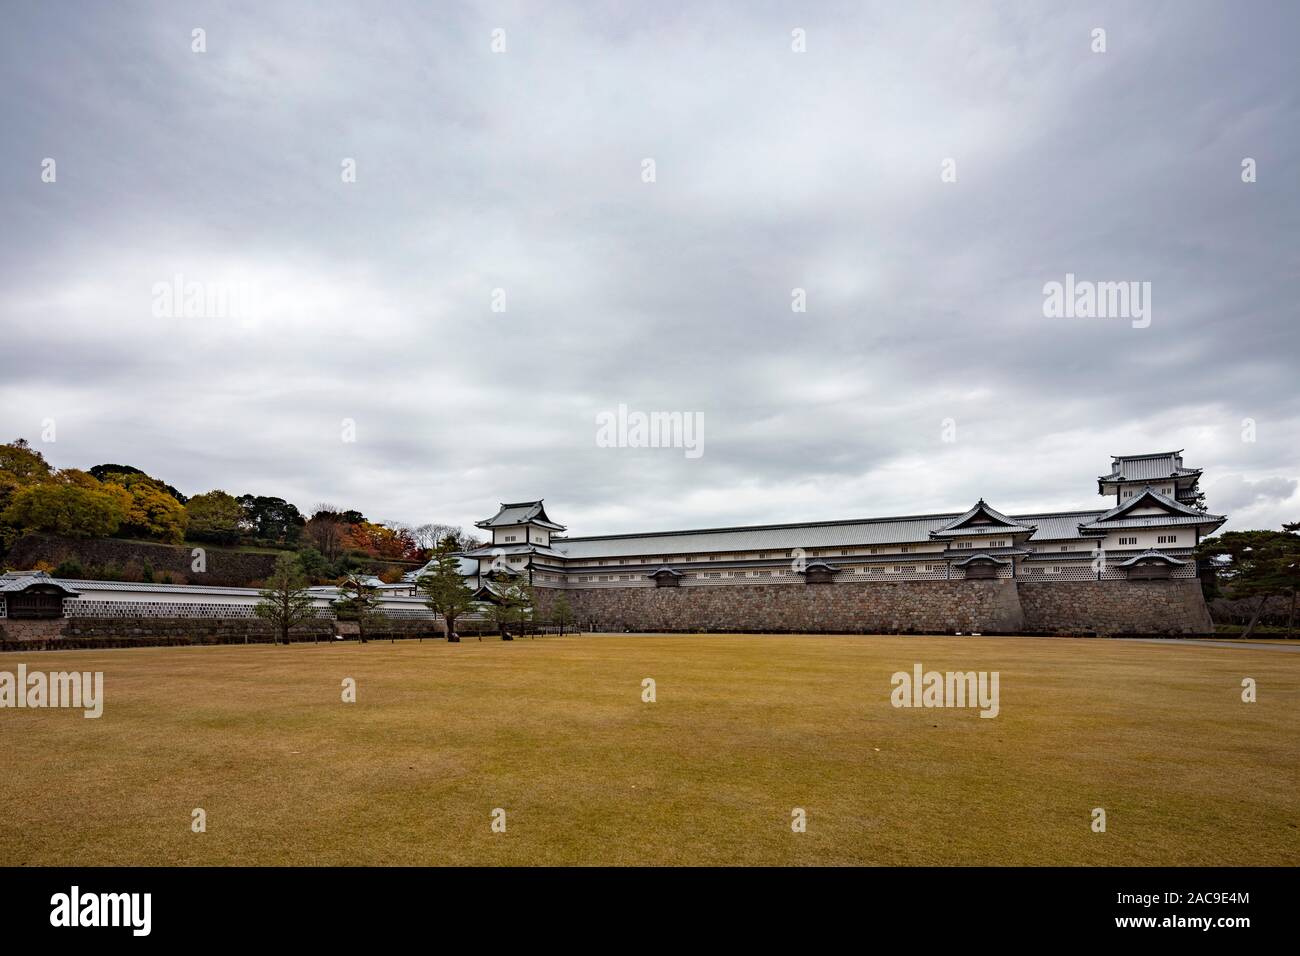 Kanazawa castle, Kanazawa, Ishikawa Prefecture, Japan Stock Photo